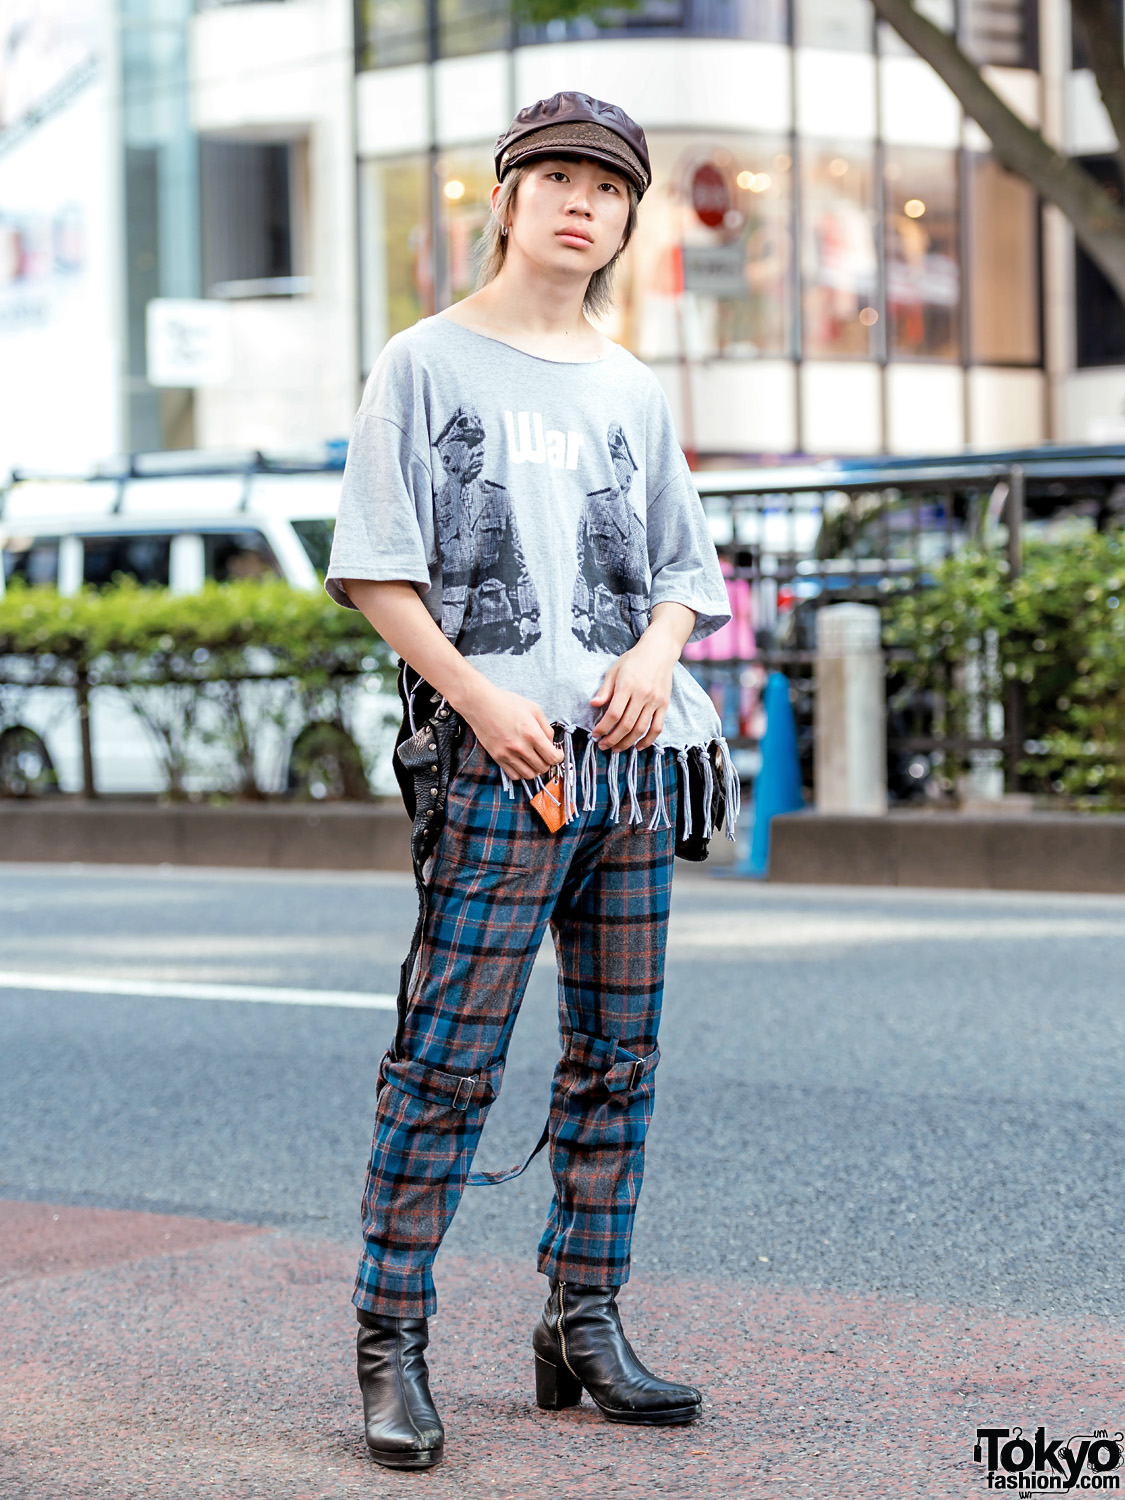 Harajuku Fringe & Plaid Street Style w/ Banal Chic Bizarre, Phingerin ...